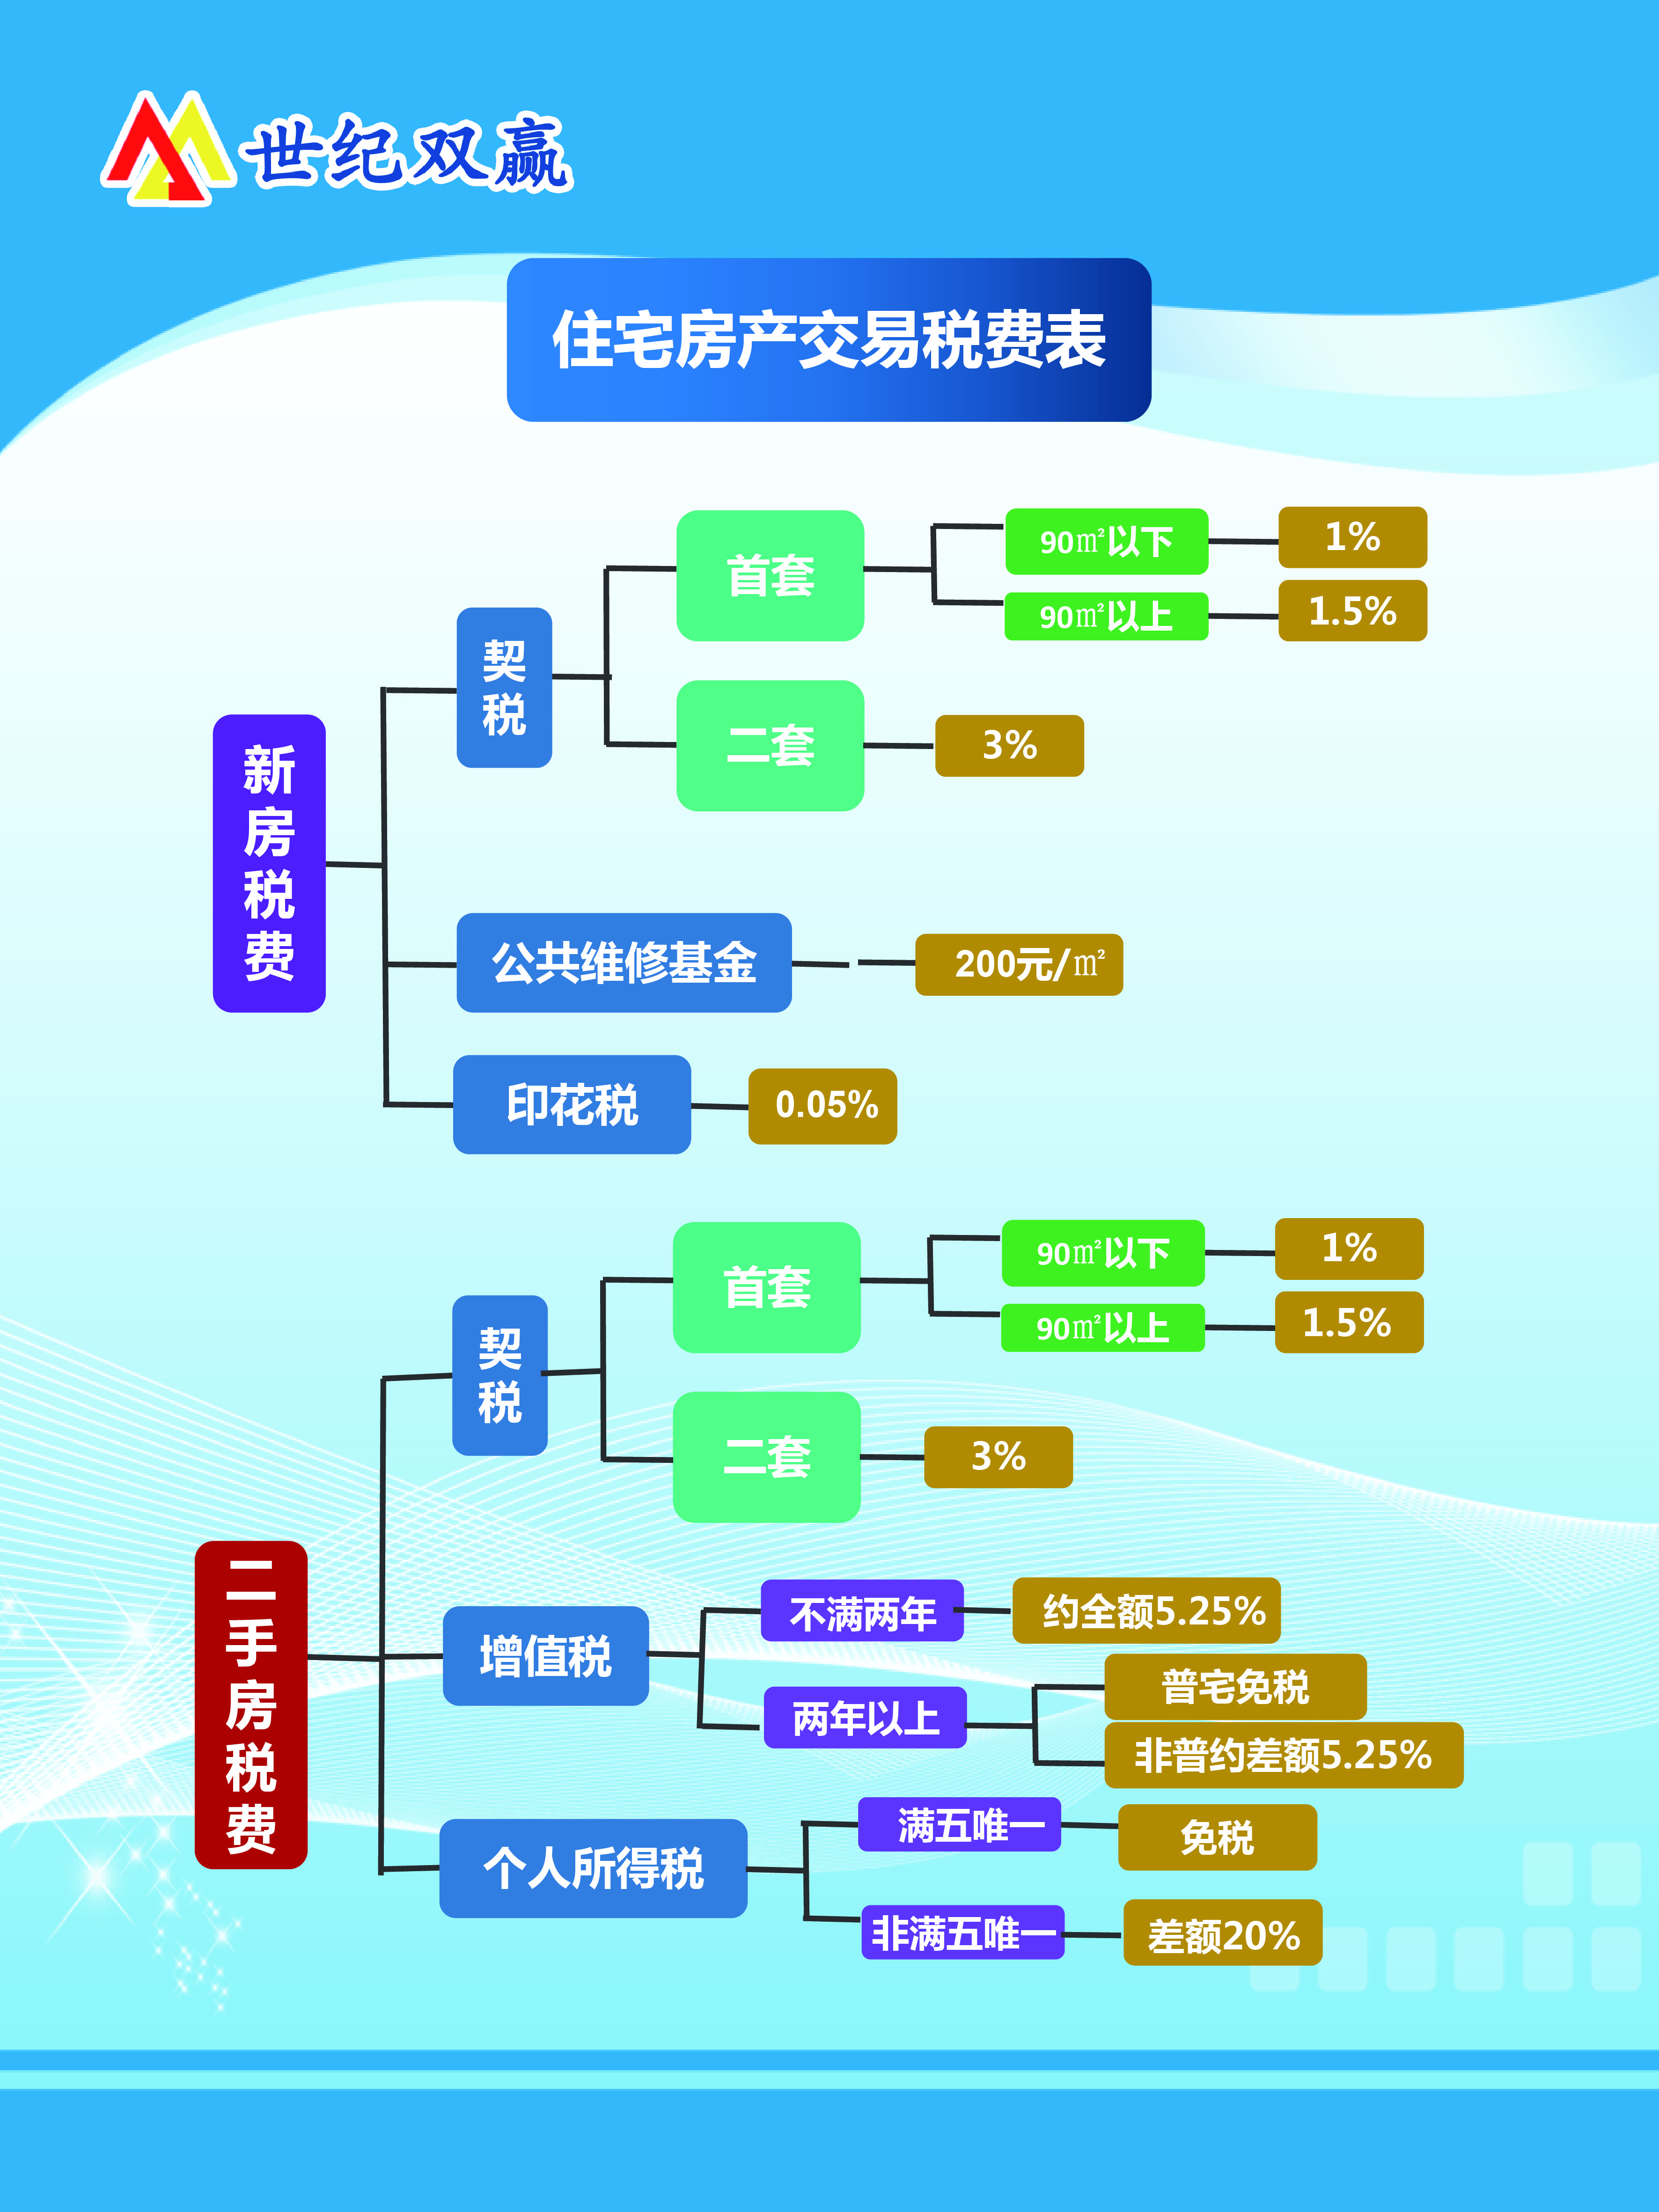 北京购买新房二手房税费有何区别一张图带您了解附图表